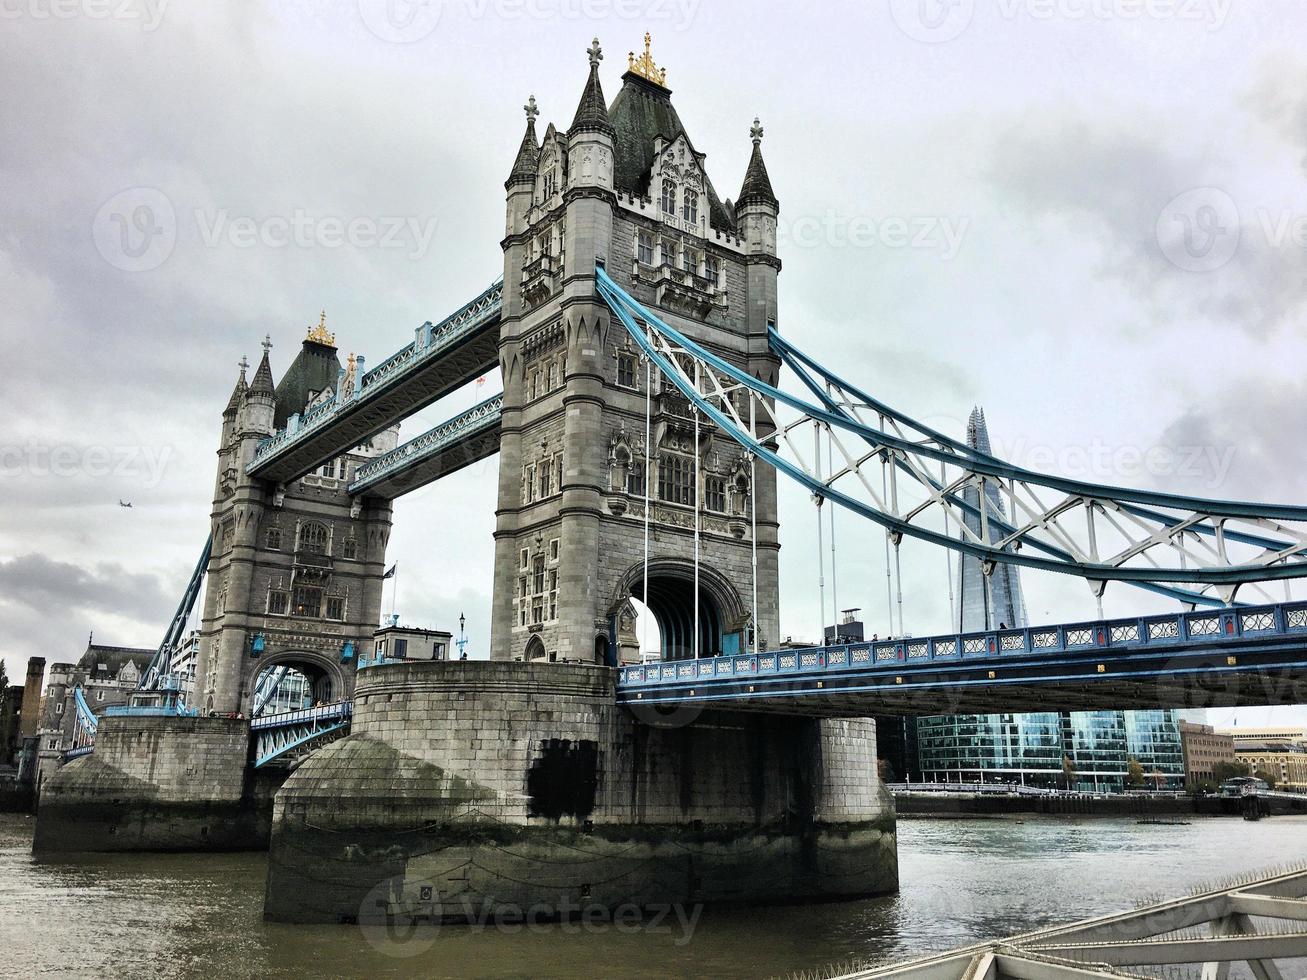 una vista del puente de la torre en londres foto